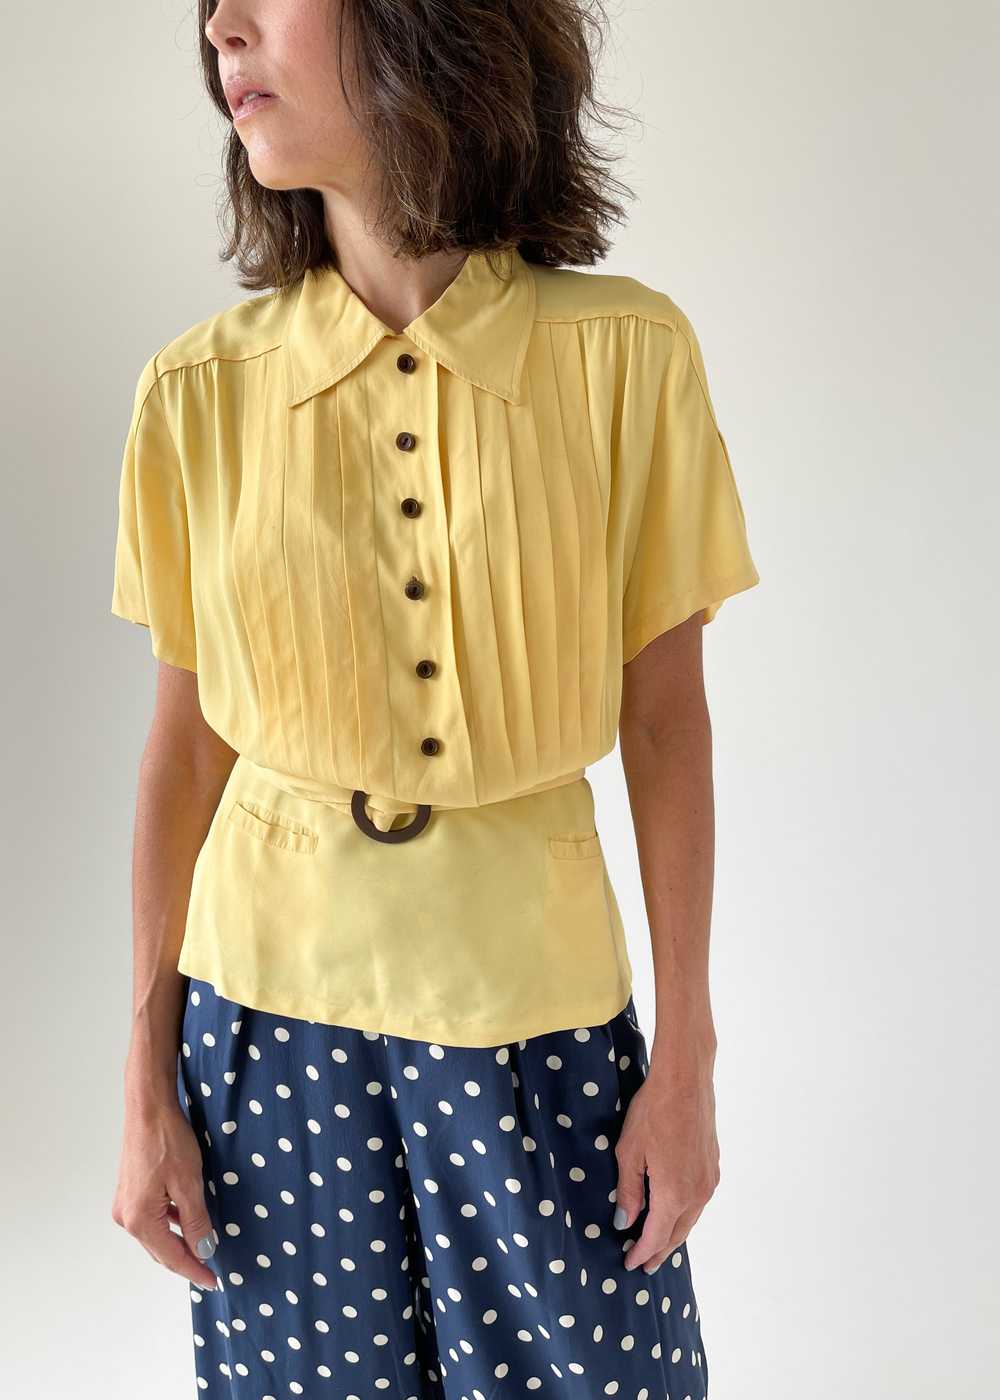 Vintage 1940s Daffodil Yellow Rayon Shirt - image 4